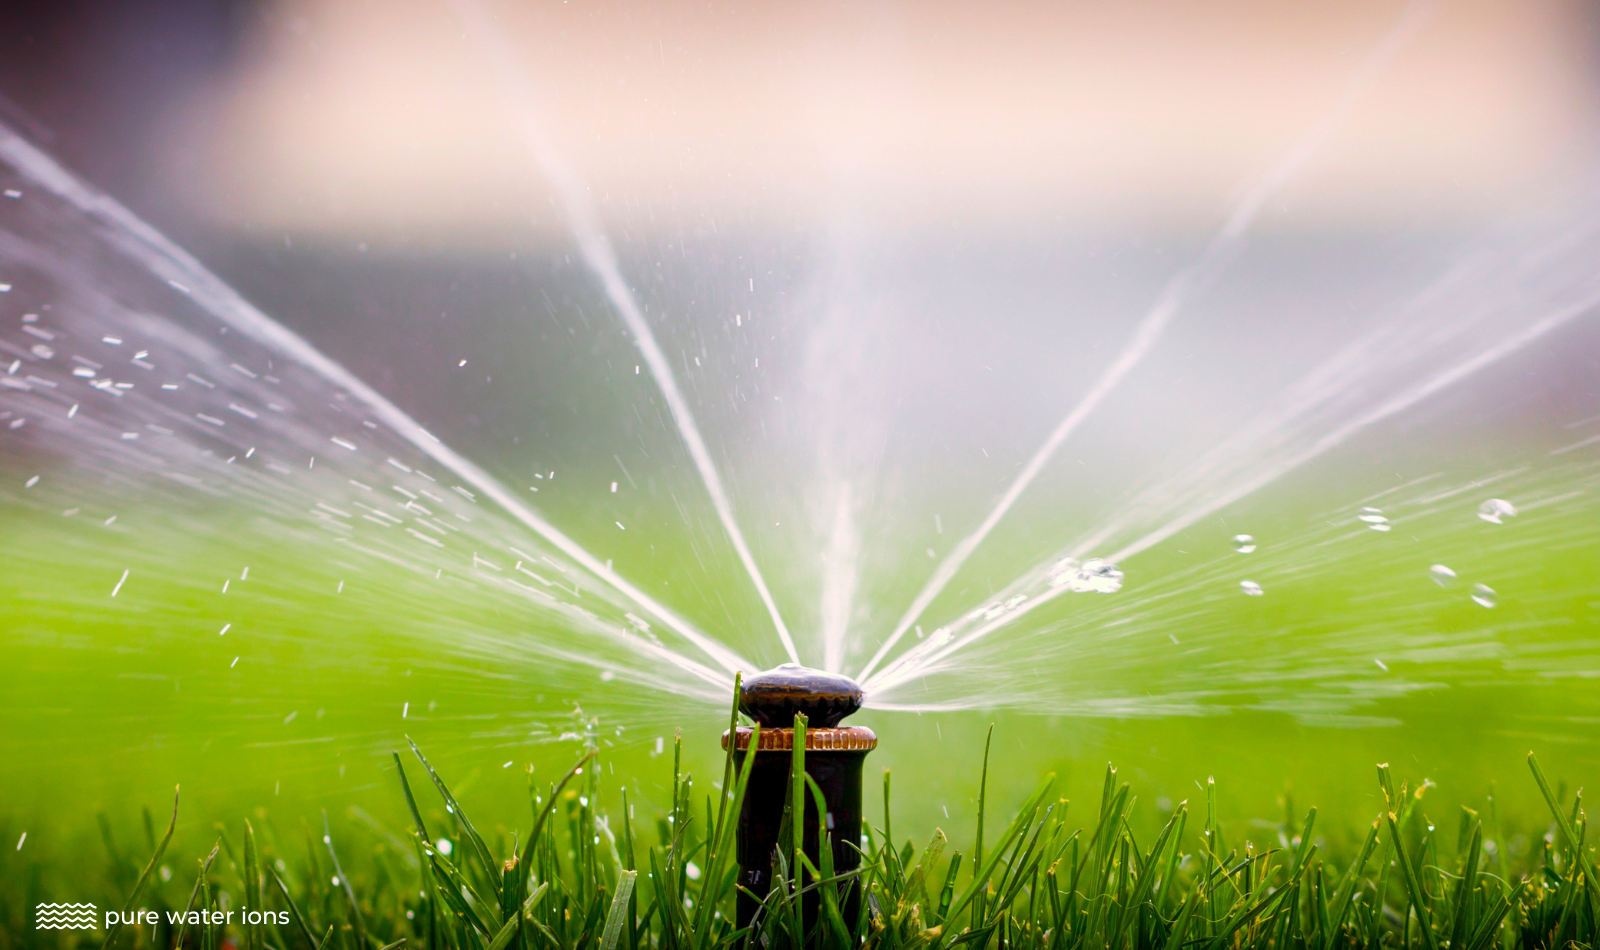 a water sprinkler watering a lawn